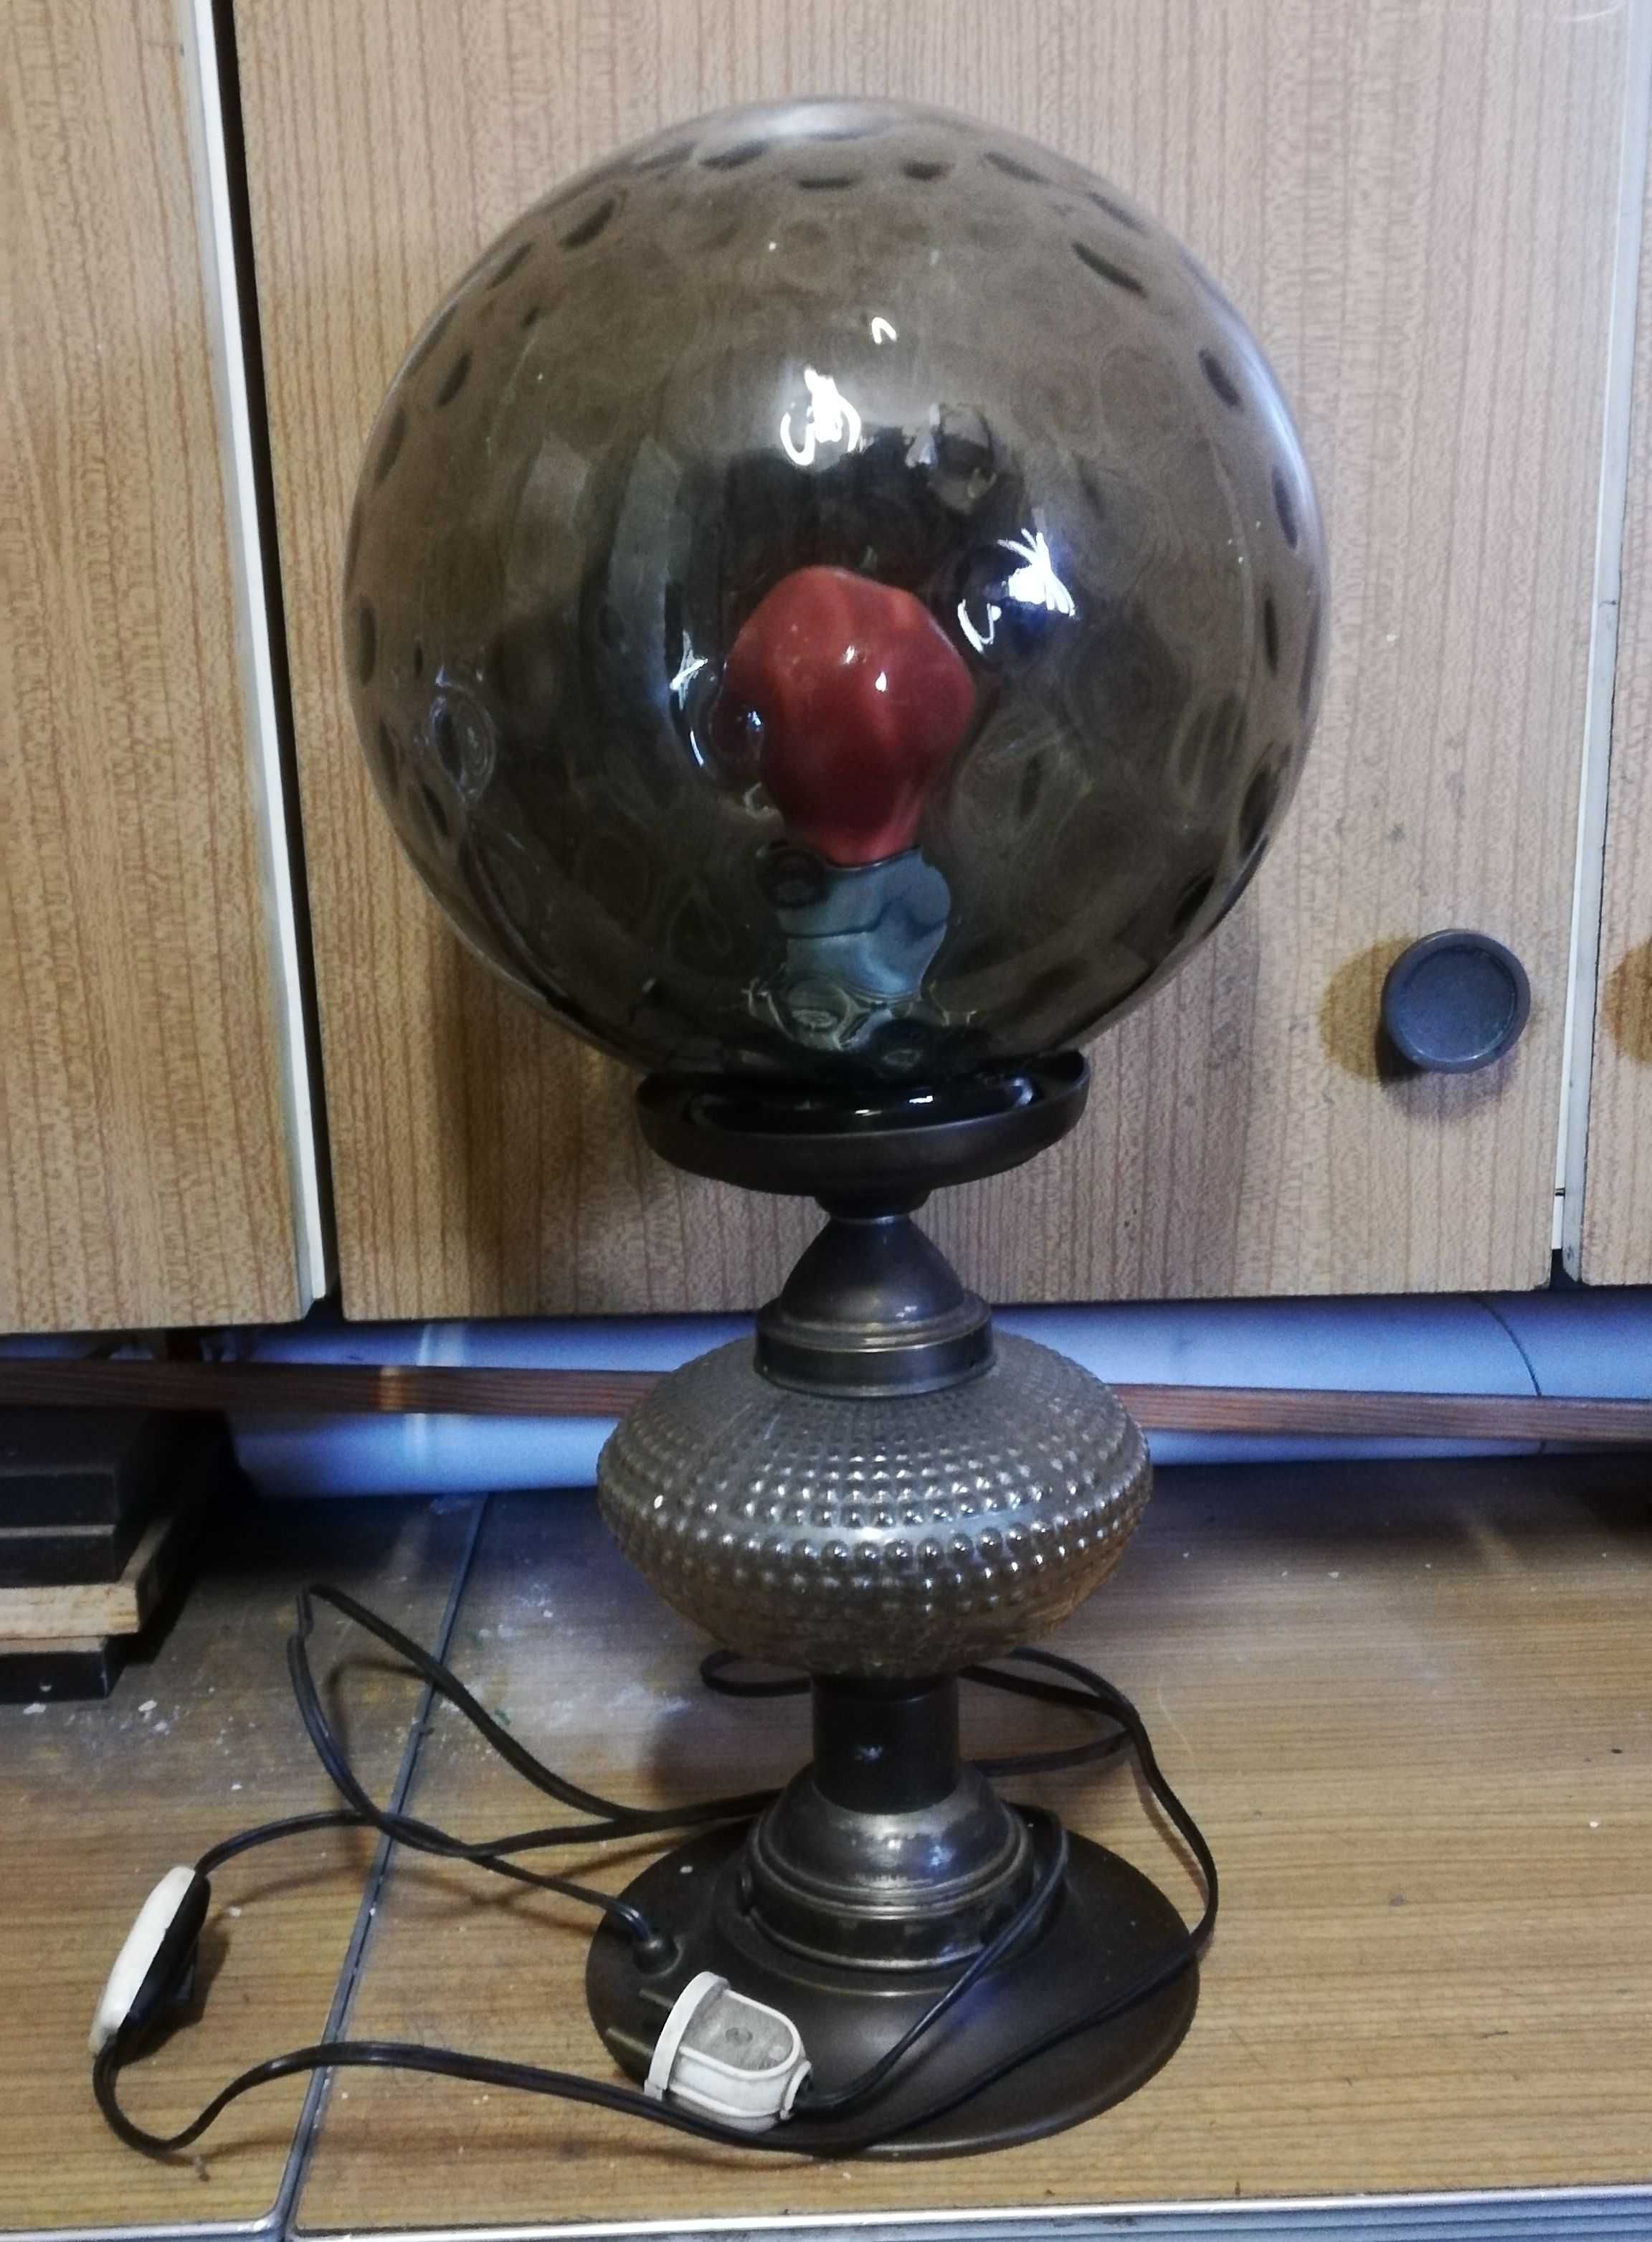 Lampa vintage PRL kula działająca